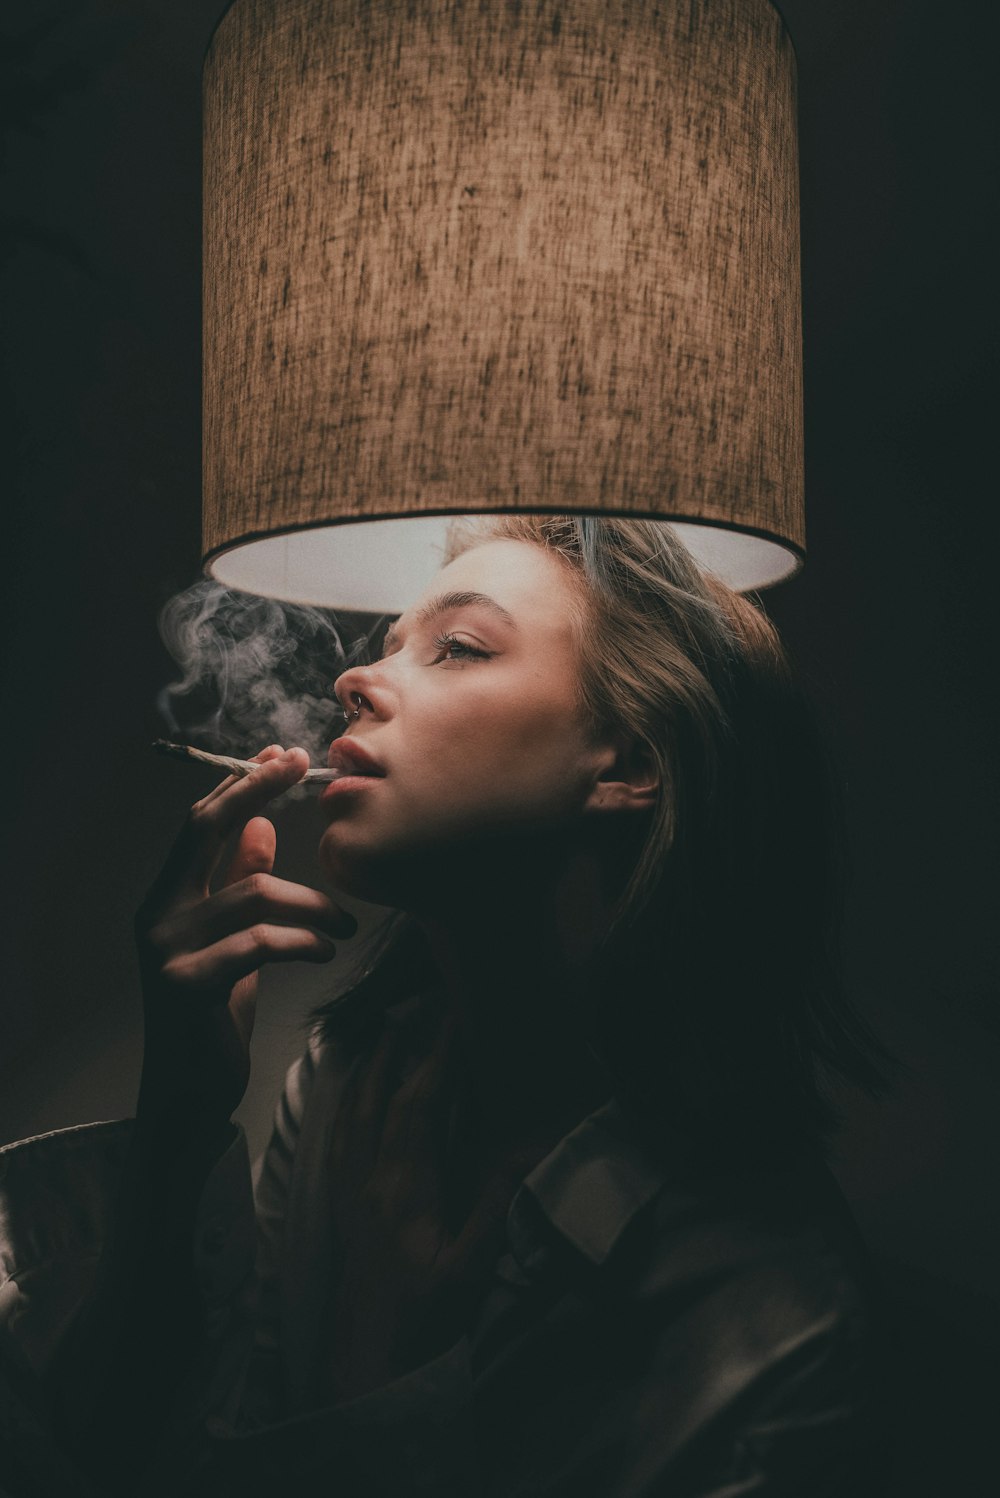 Una mujer fumando un cigarrillo junto a una lámpara